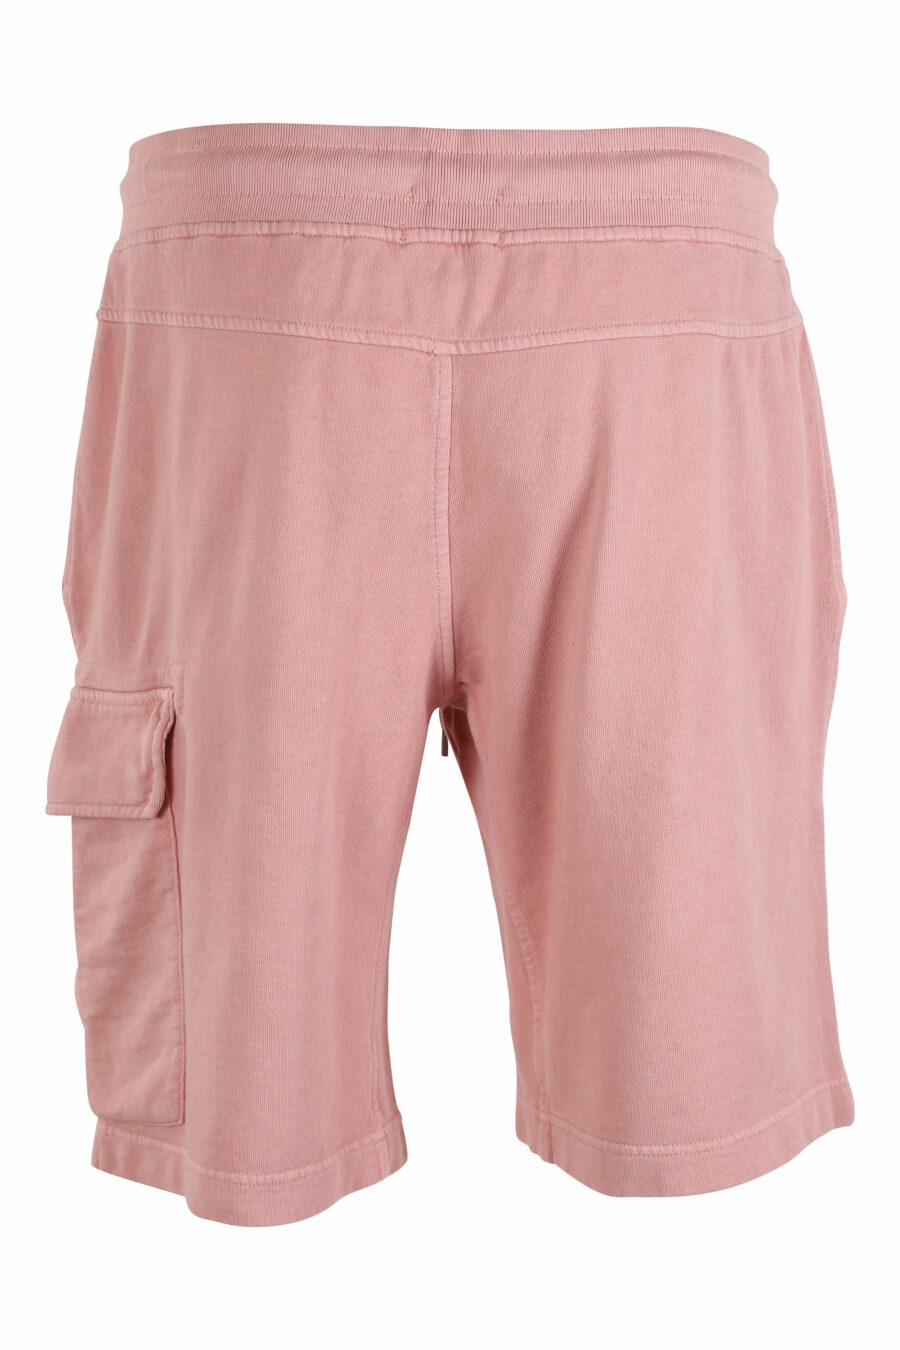 Pantalón de chándal corto rosa estilo cargo con minilogo circular - IMG 9521